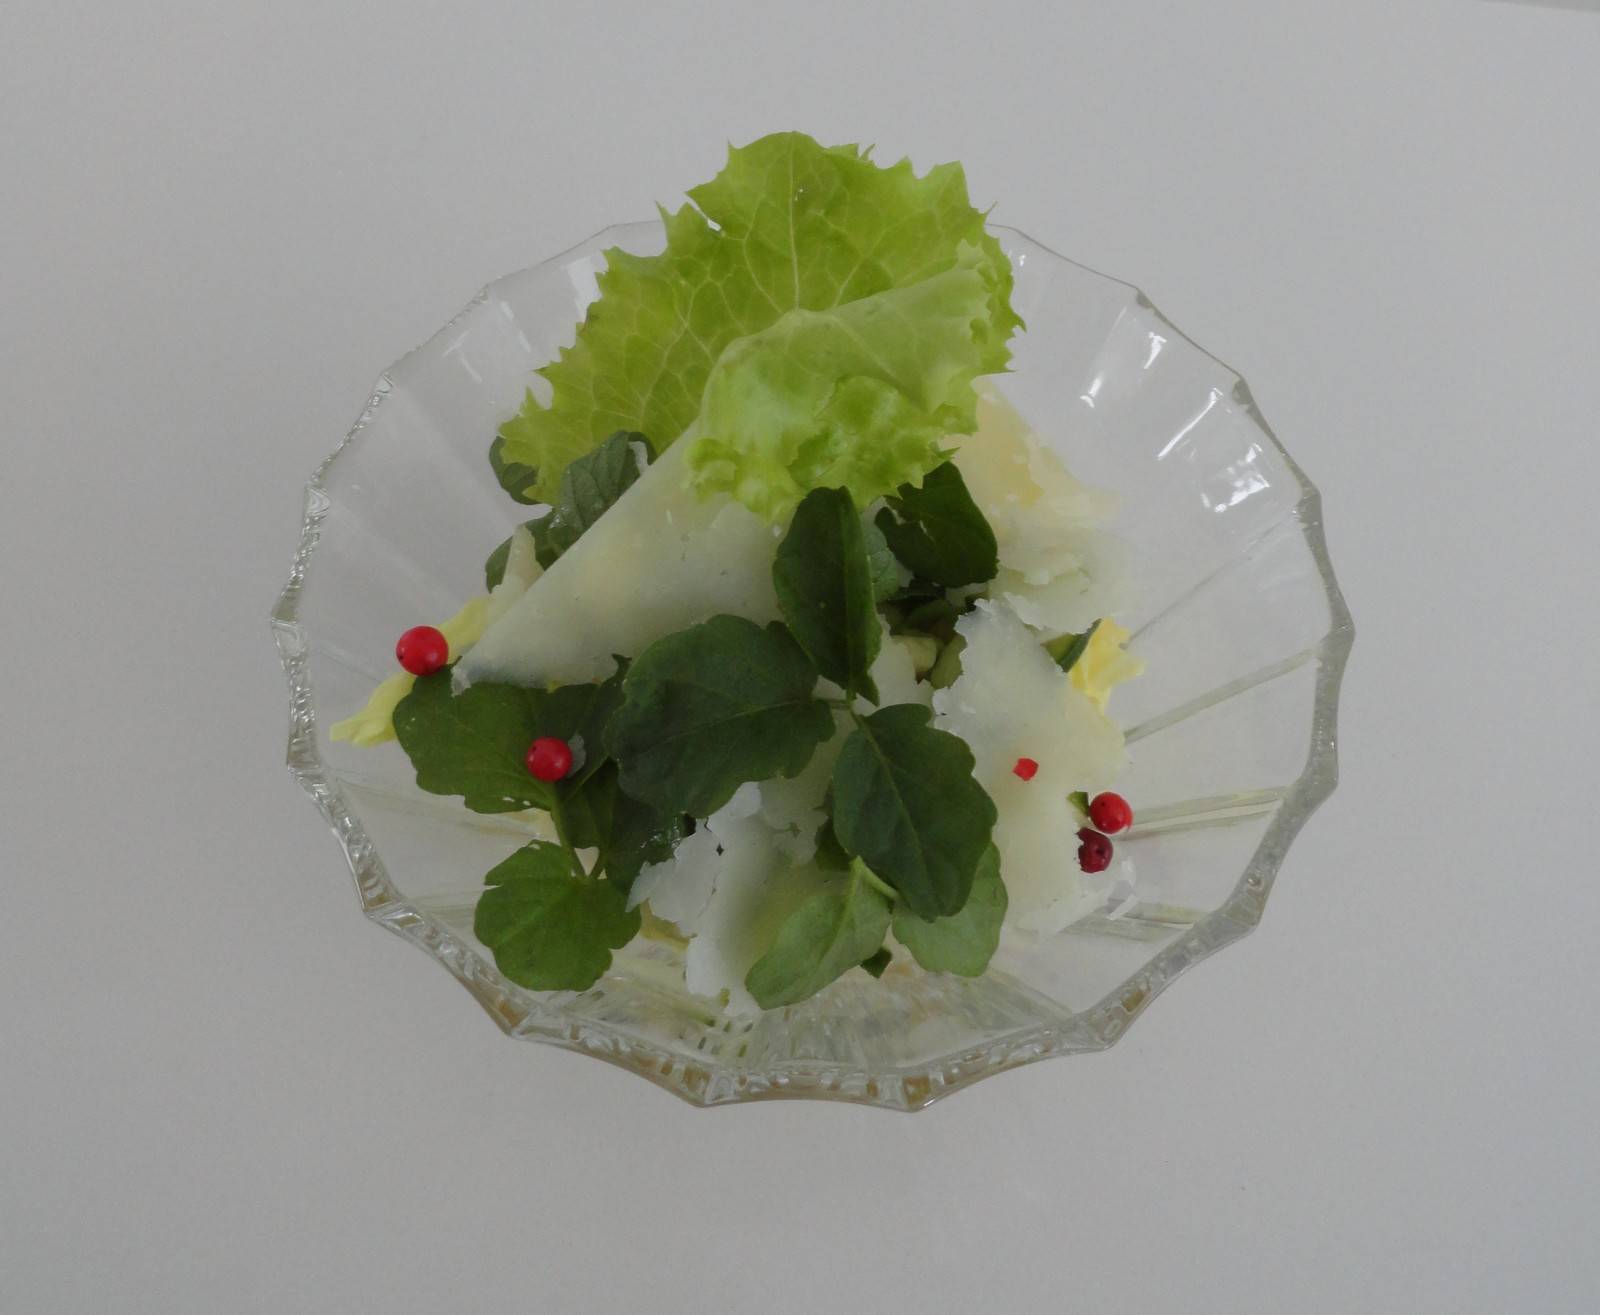 Frischer Salat mit Minze